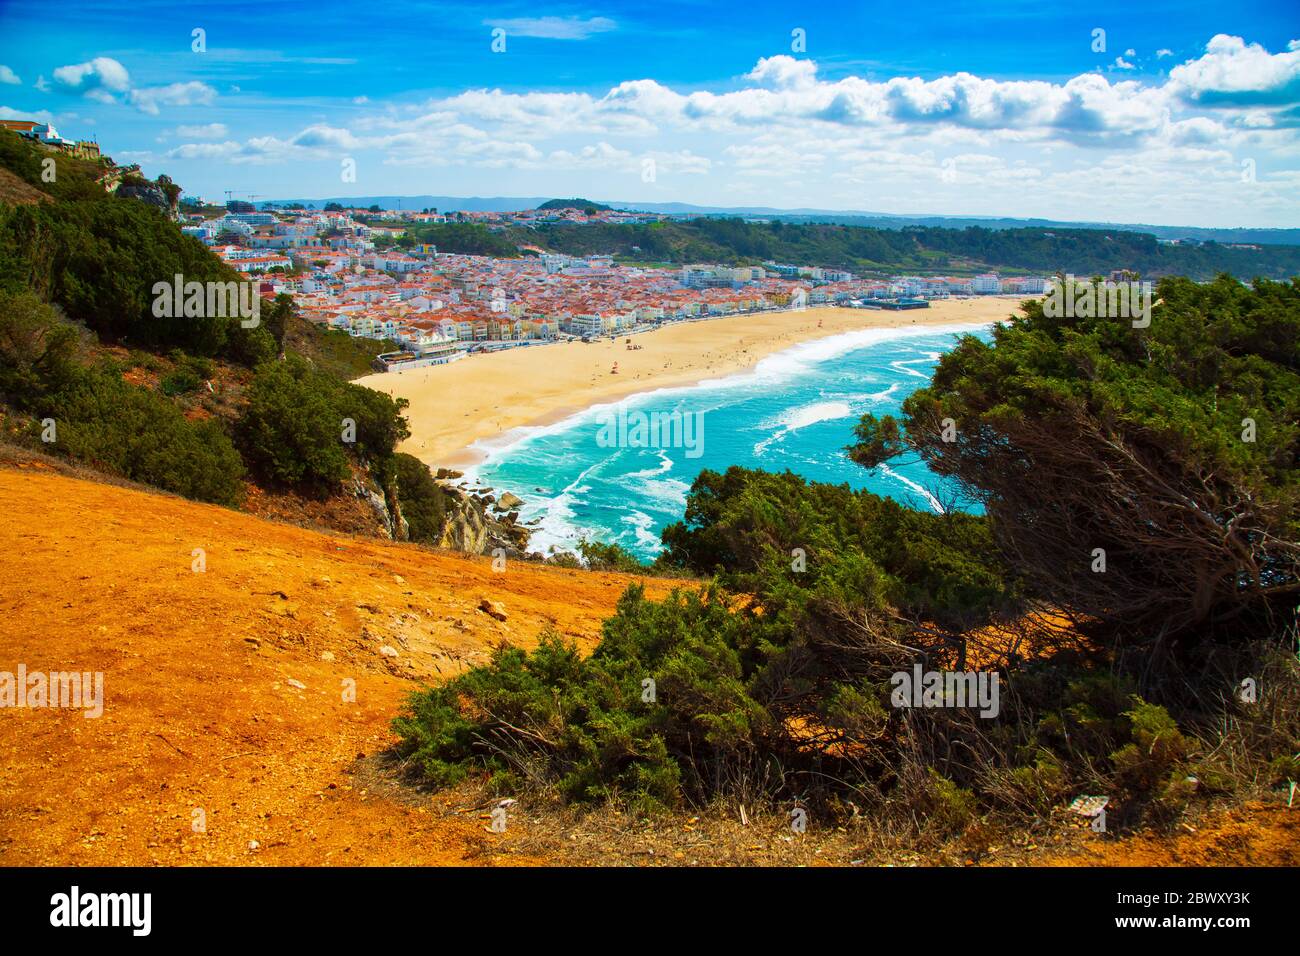 Vista sulla città di Nazare e sulla spiaggia sabbiosa vista dall'alta scogliera, Portogallo Foto Stock